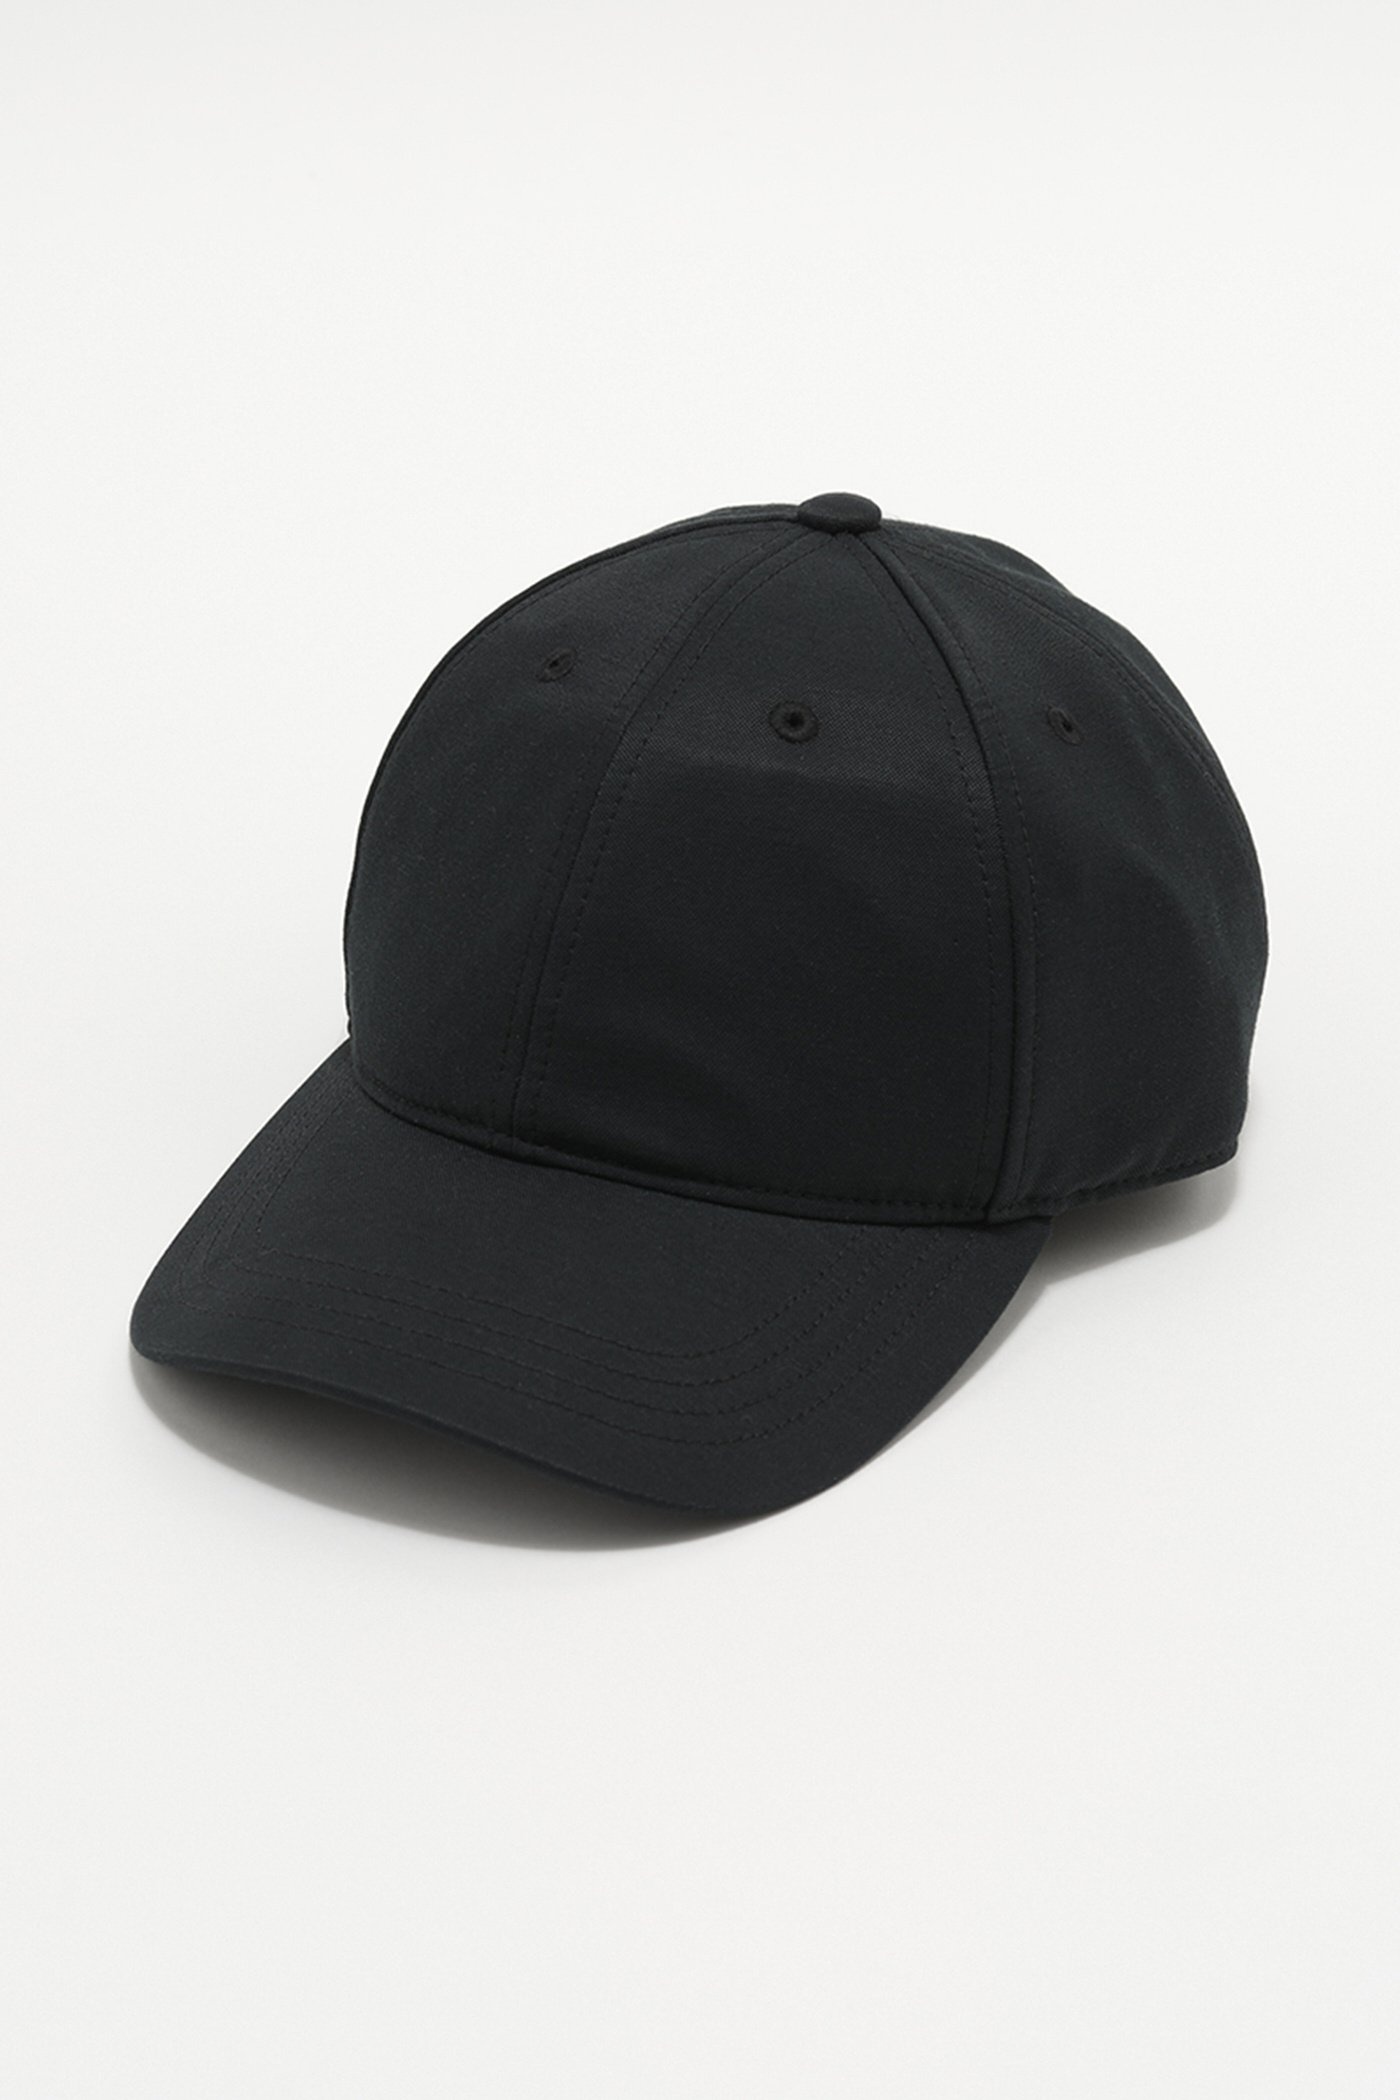 Ballcap Deluxe Black Exquisite Weave - 1